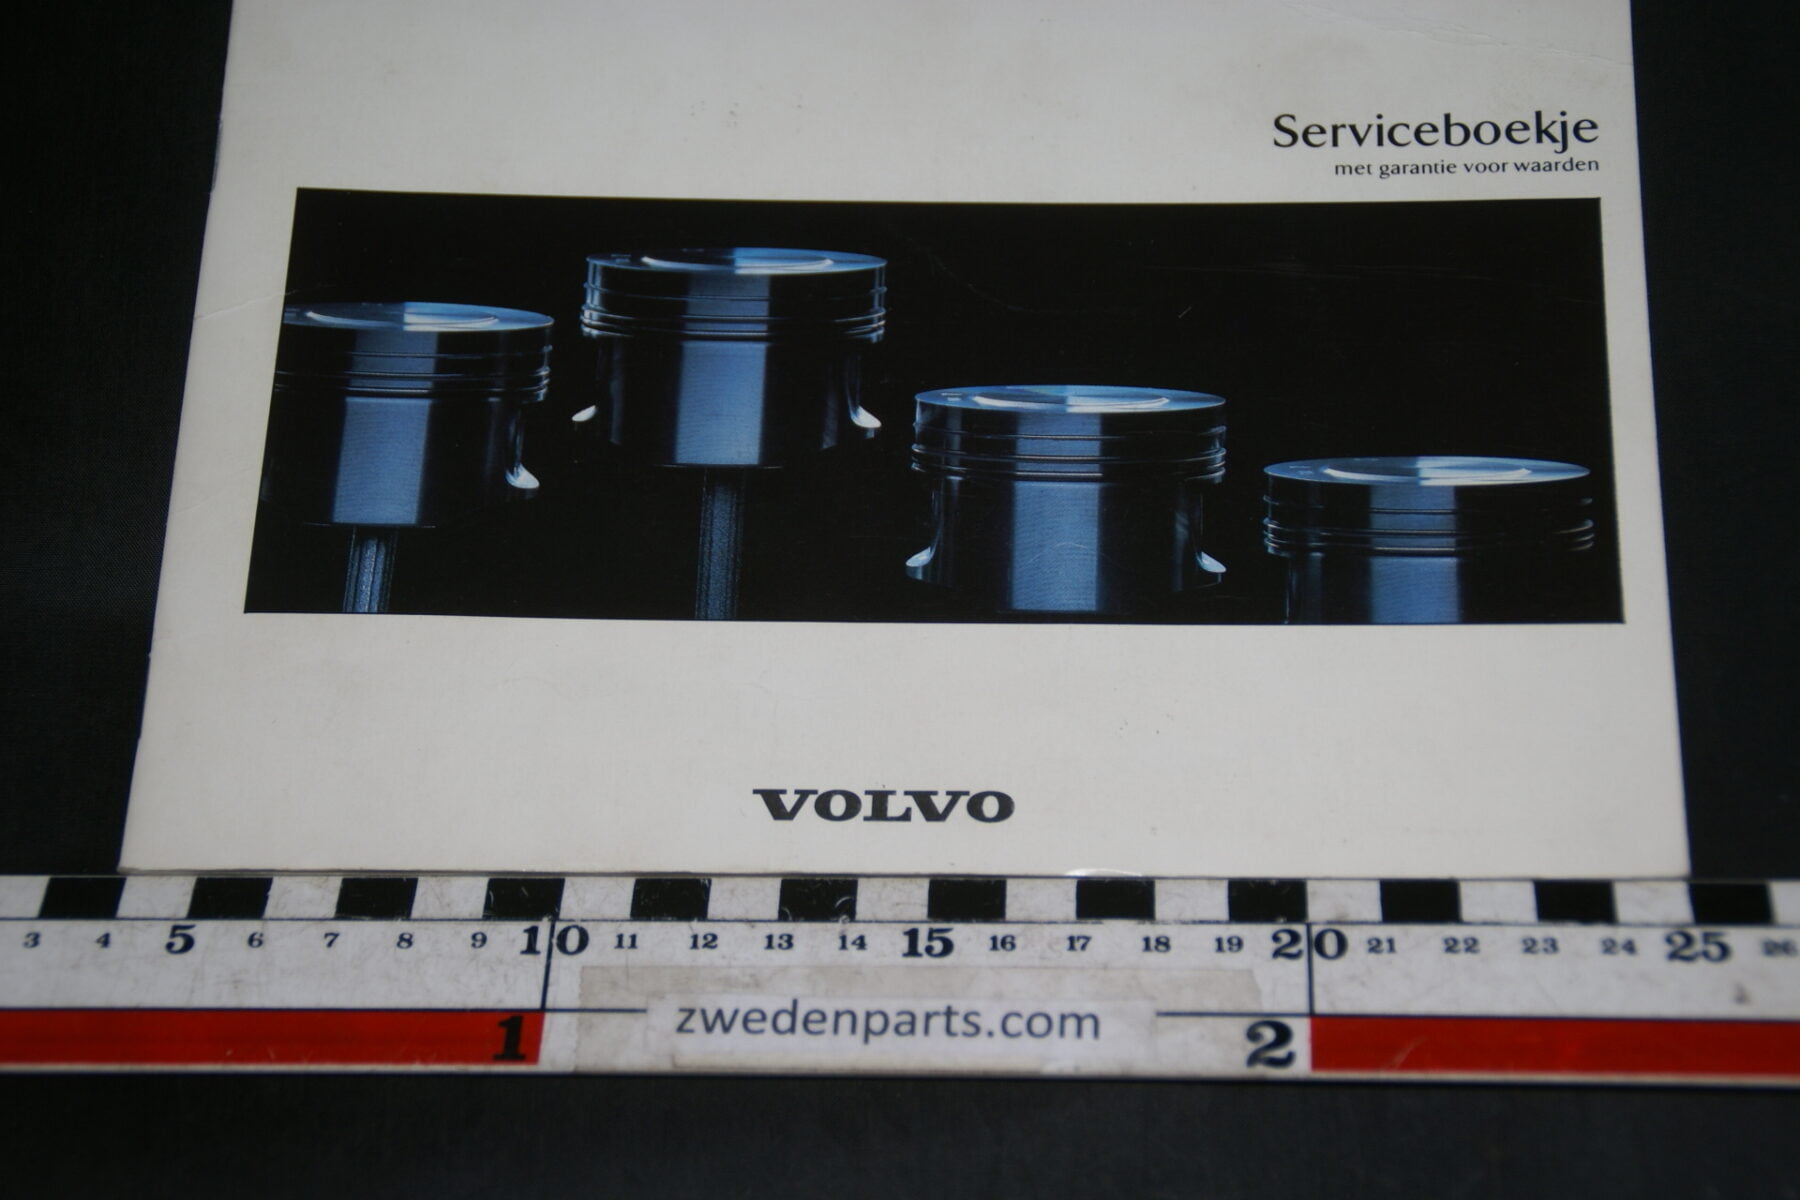 DSC02441 1991 Volvo serviceboekje TP86156.1